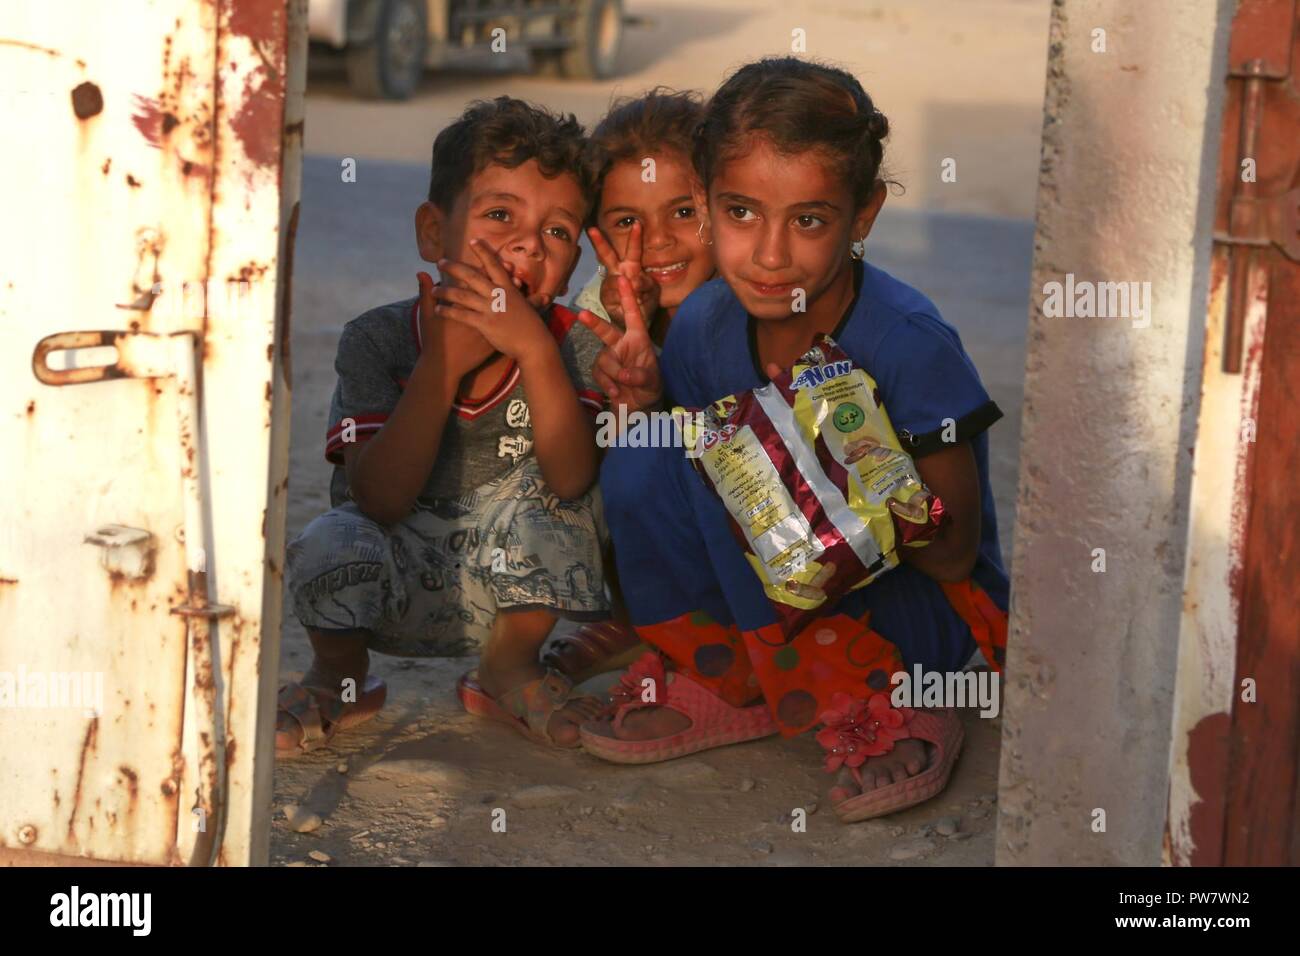 Drei Kinder mit Koalition Mitglieder kommunizieren, während ein Gate eines intern Vertriebenen screening Point der Hajj Ali, Irak, 27. September 2017. Stockfoto